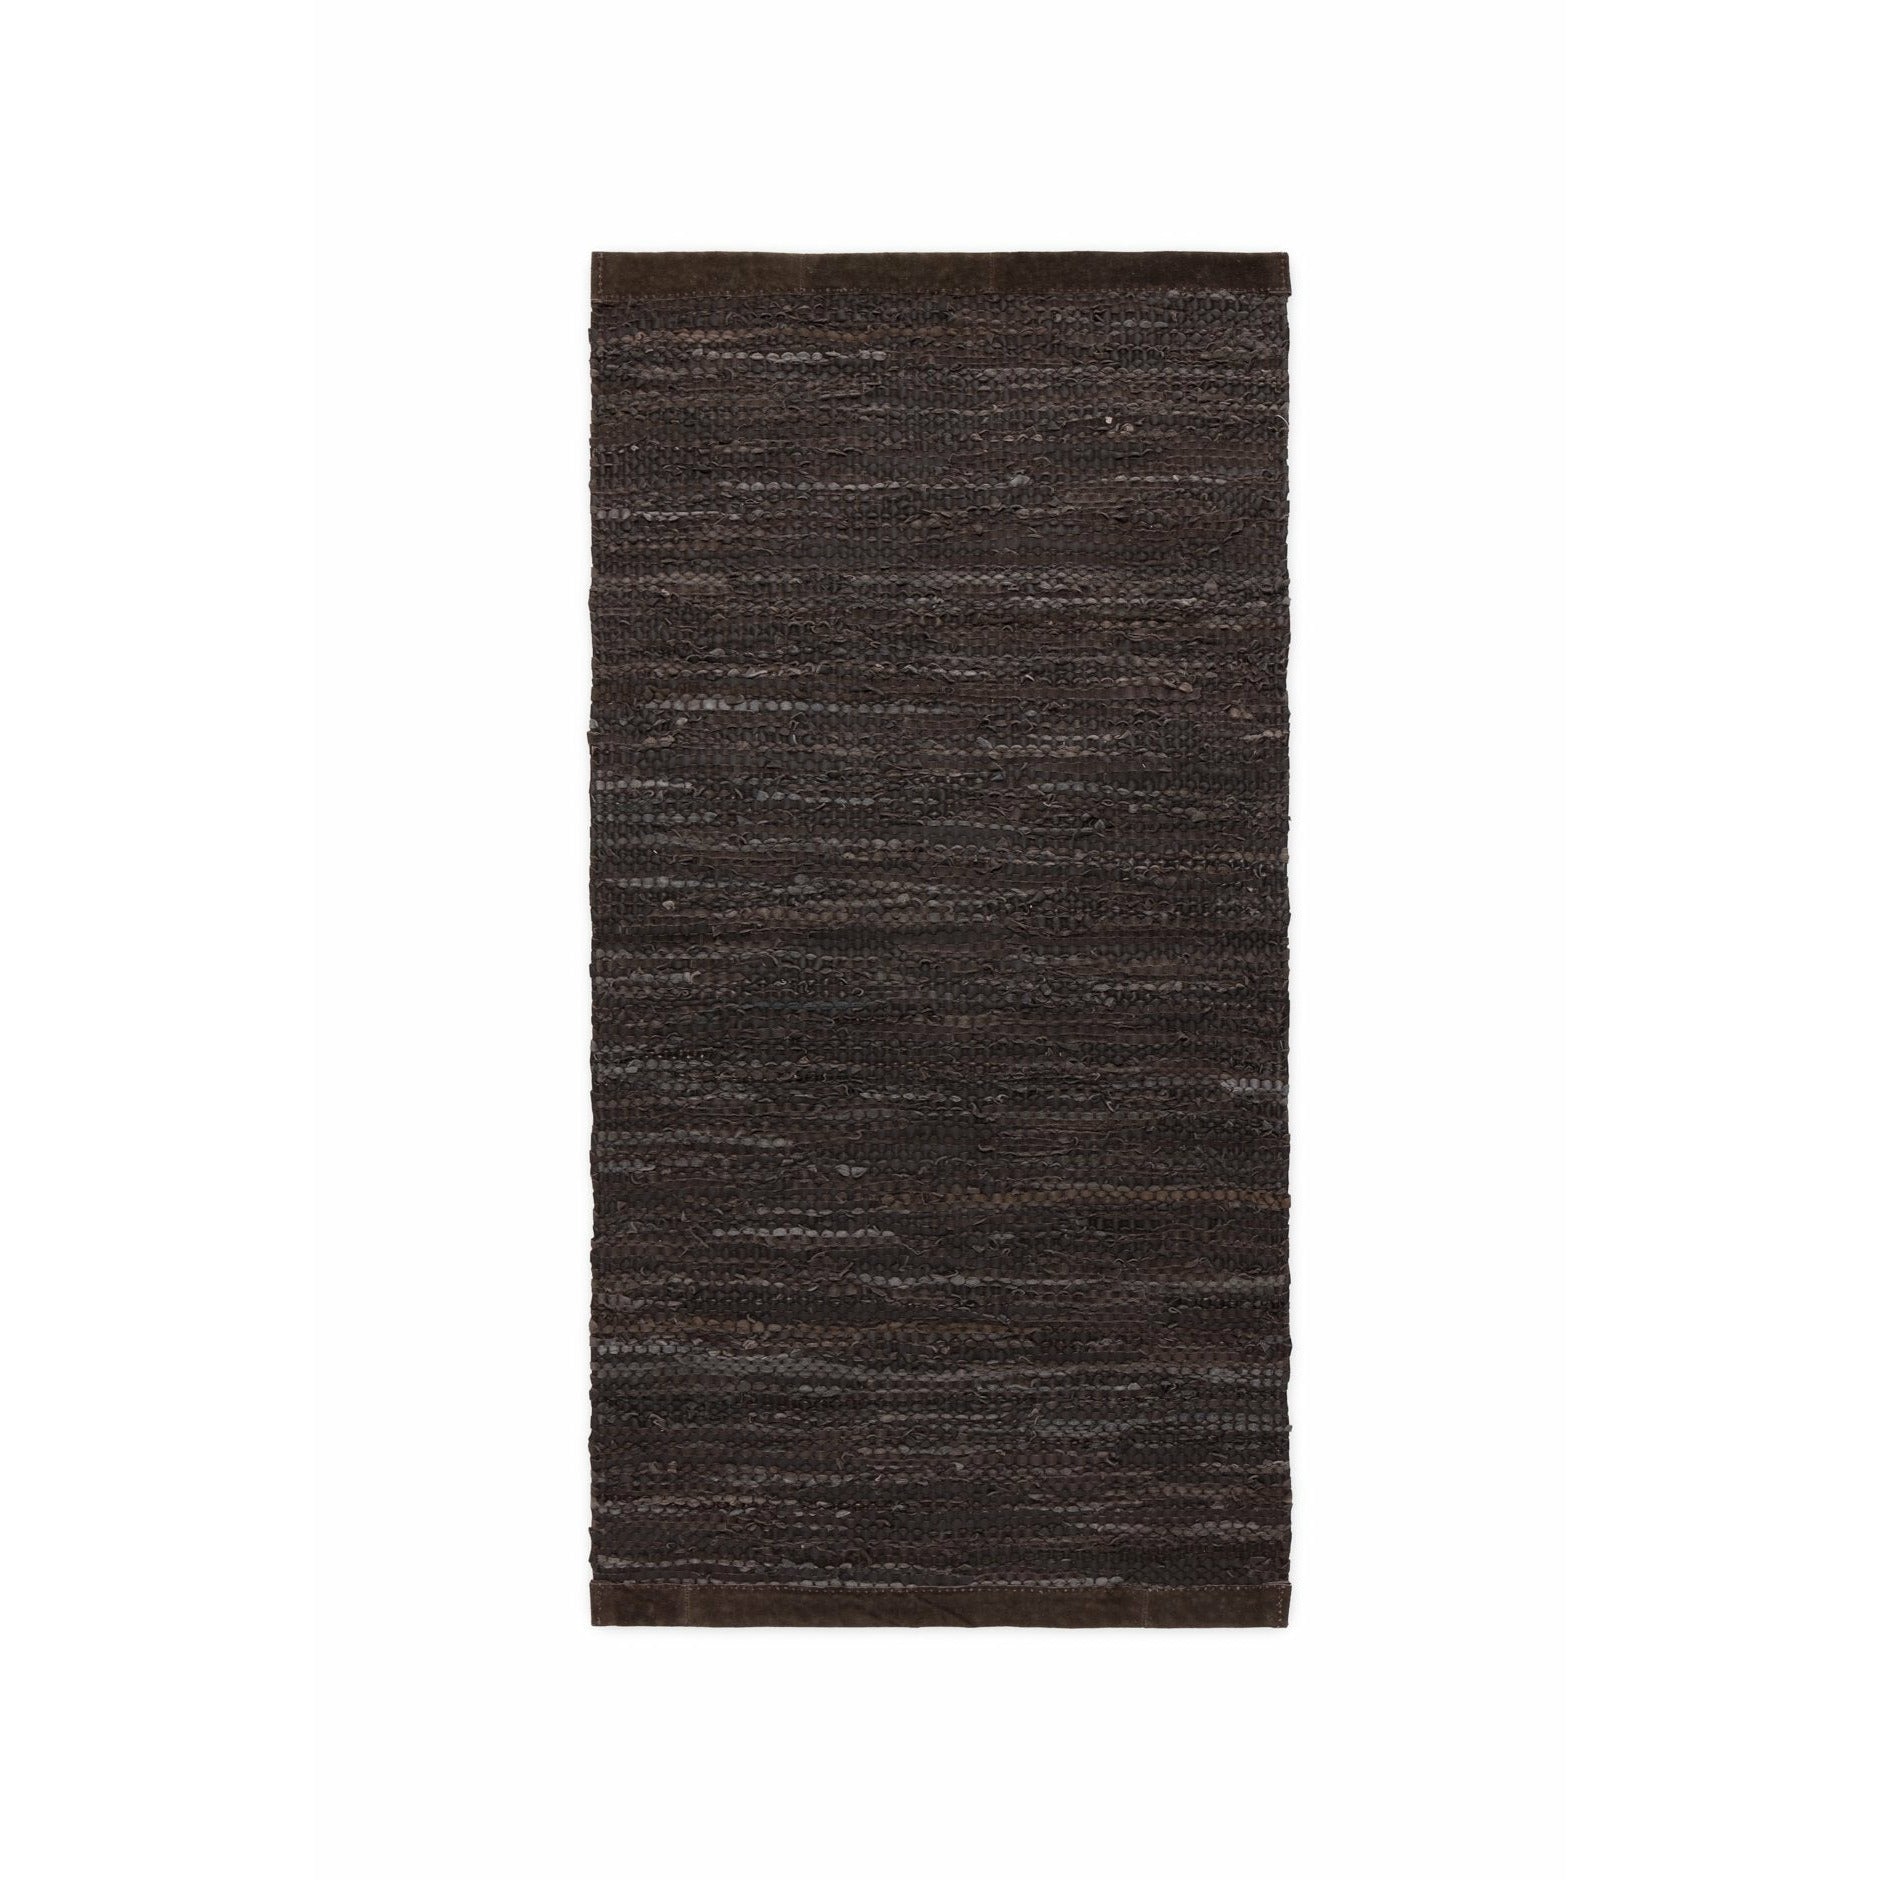 Rug Solid Tapis en cuir Choco, 250 x 350 cm